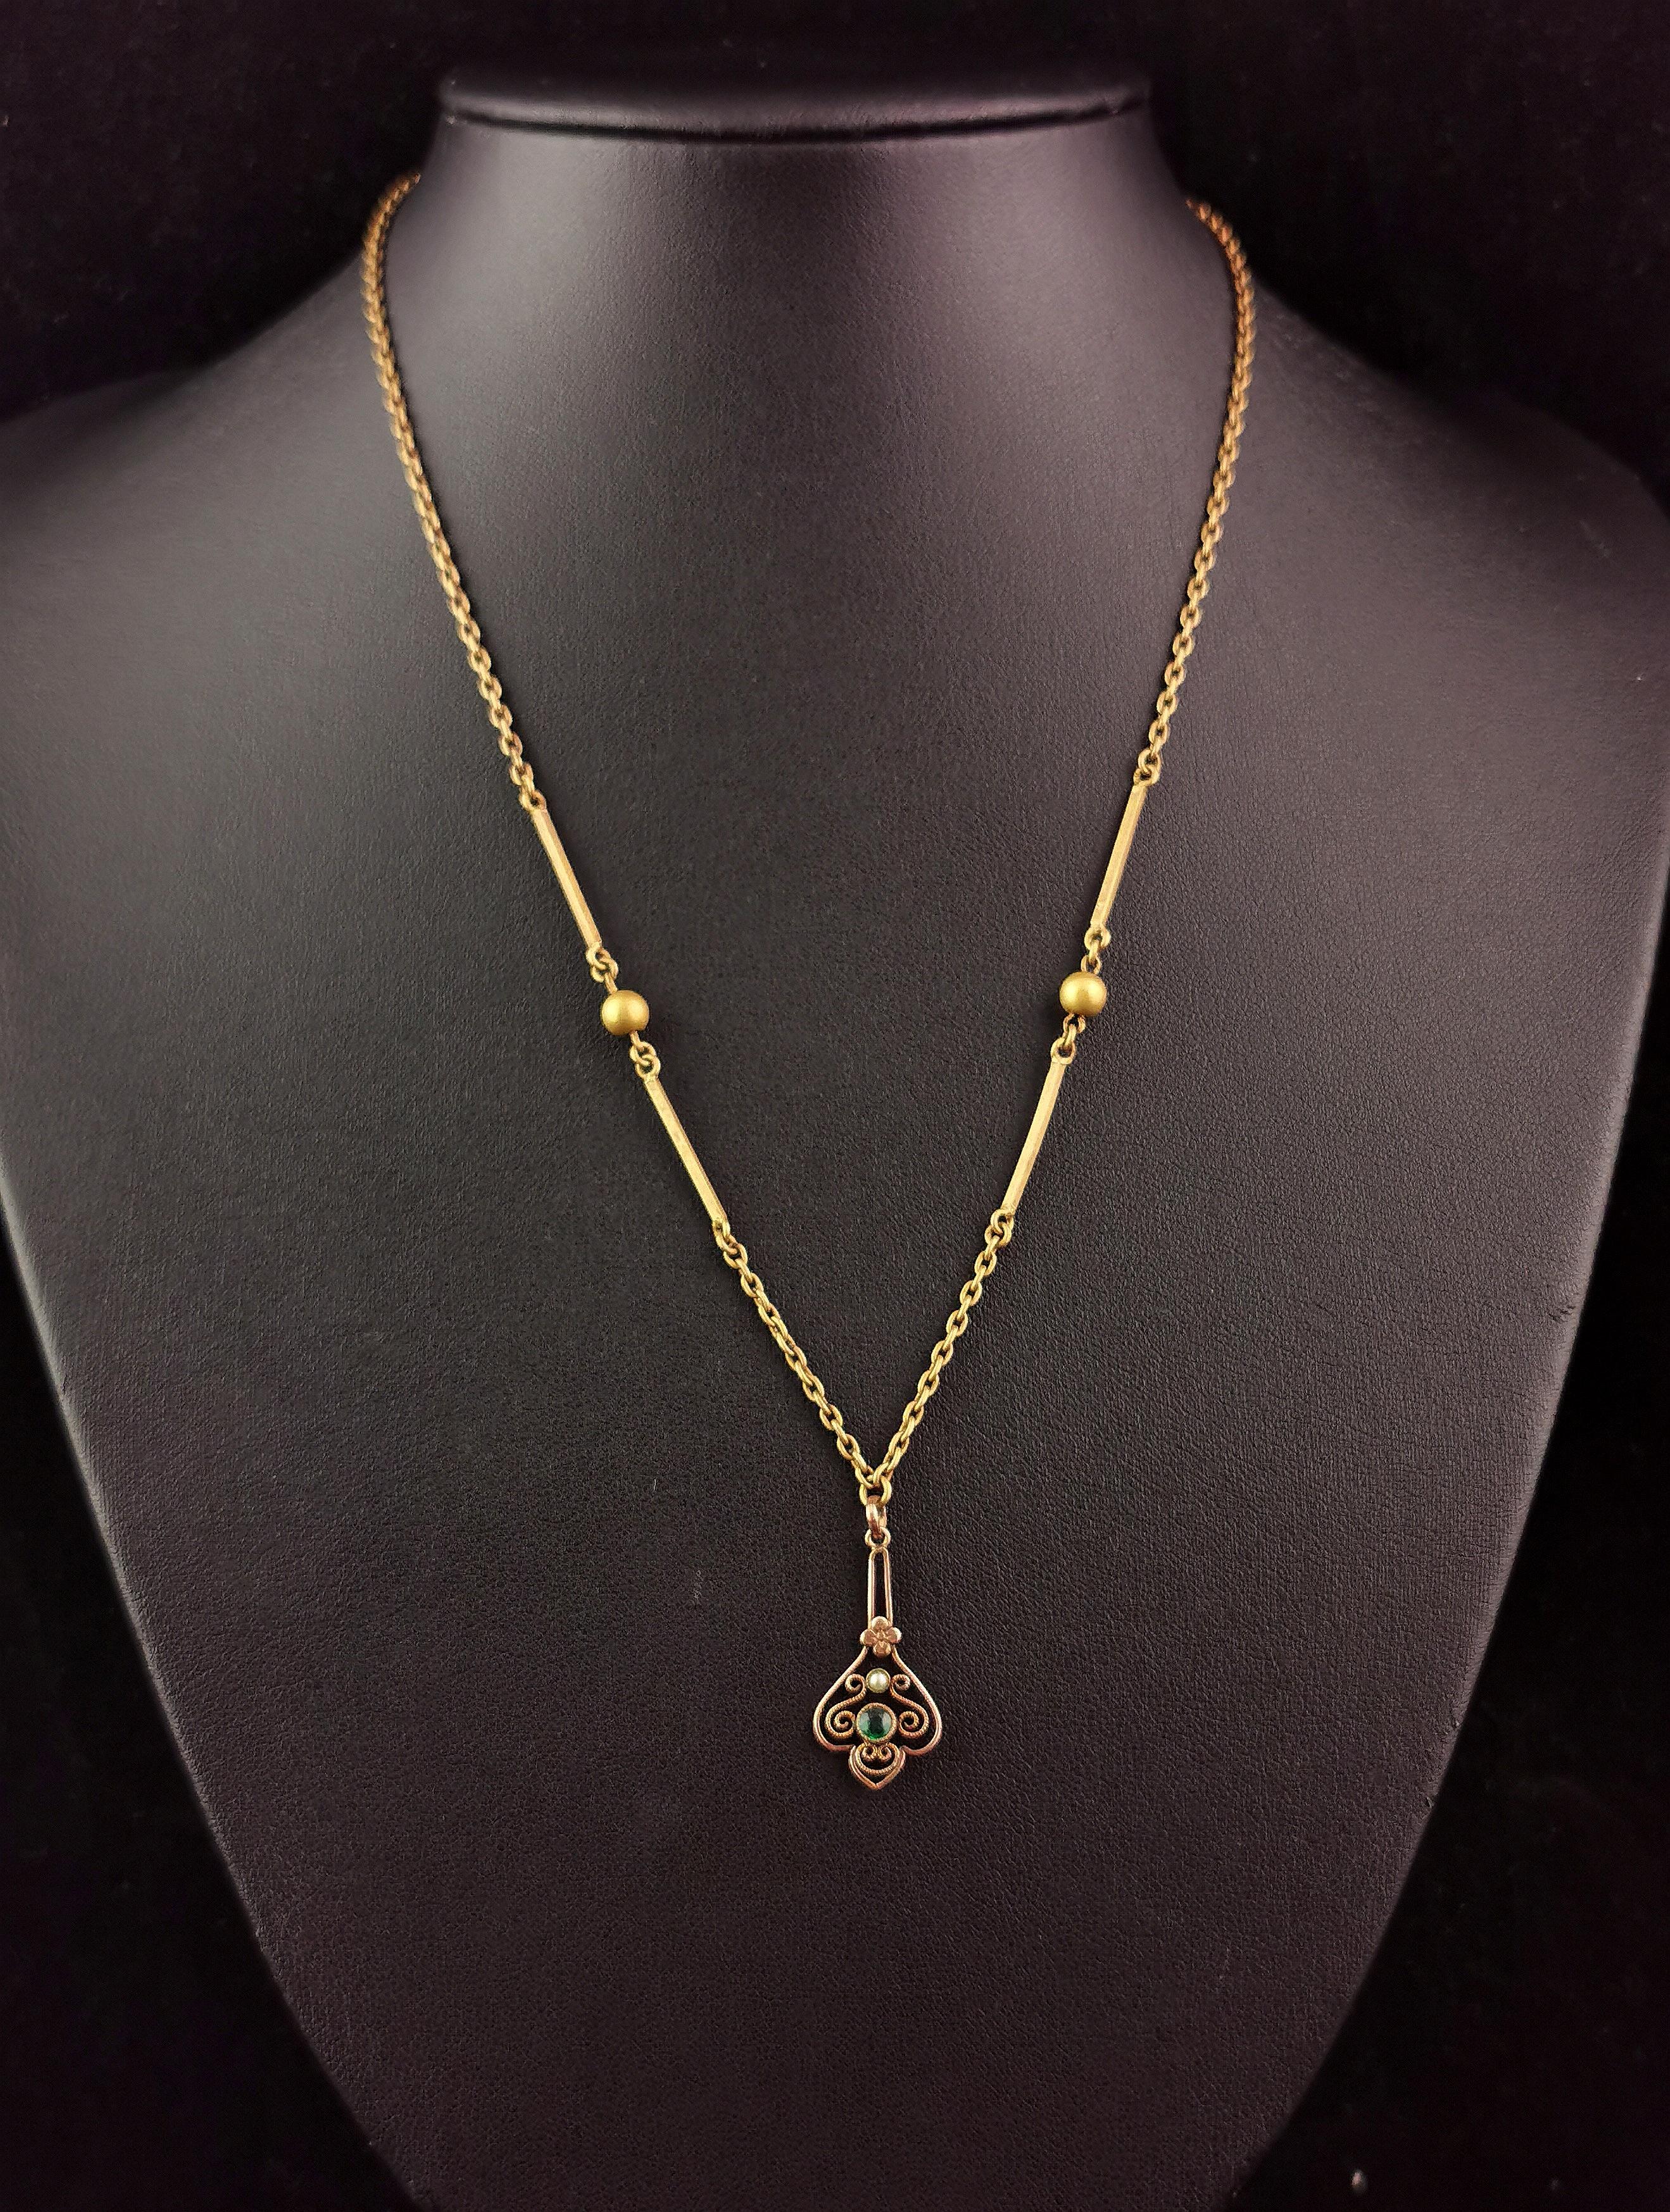 Un magnifique collier pendentif antique de l'époque édouardienne.

La chaîne est une chaîne à maillons en laiton doré, interceptée par des maillons fantaisie à barres et à boules.

Il comporte un petit pendentif en métal doré suspendu, un motif